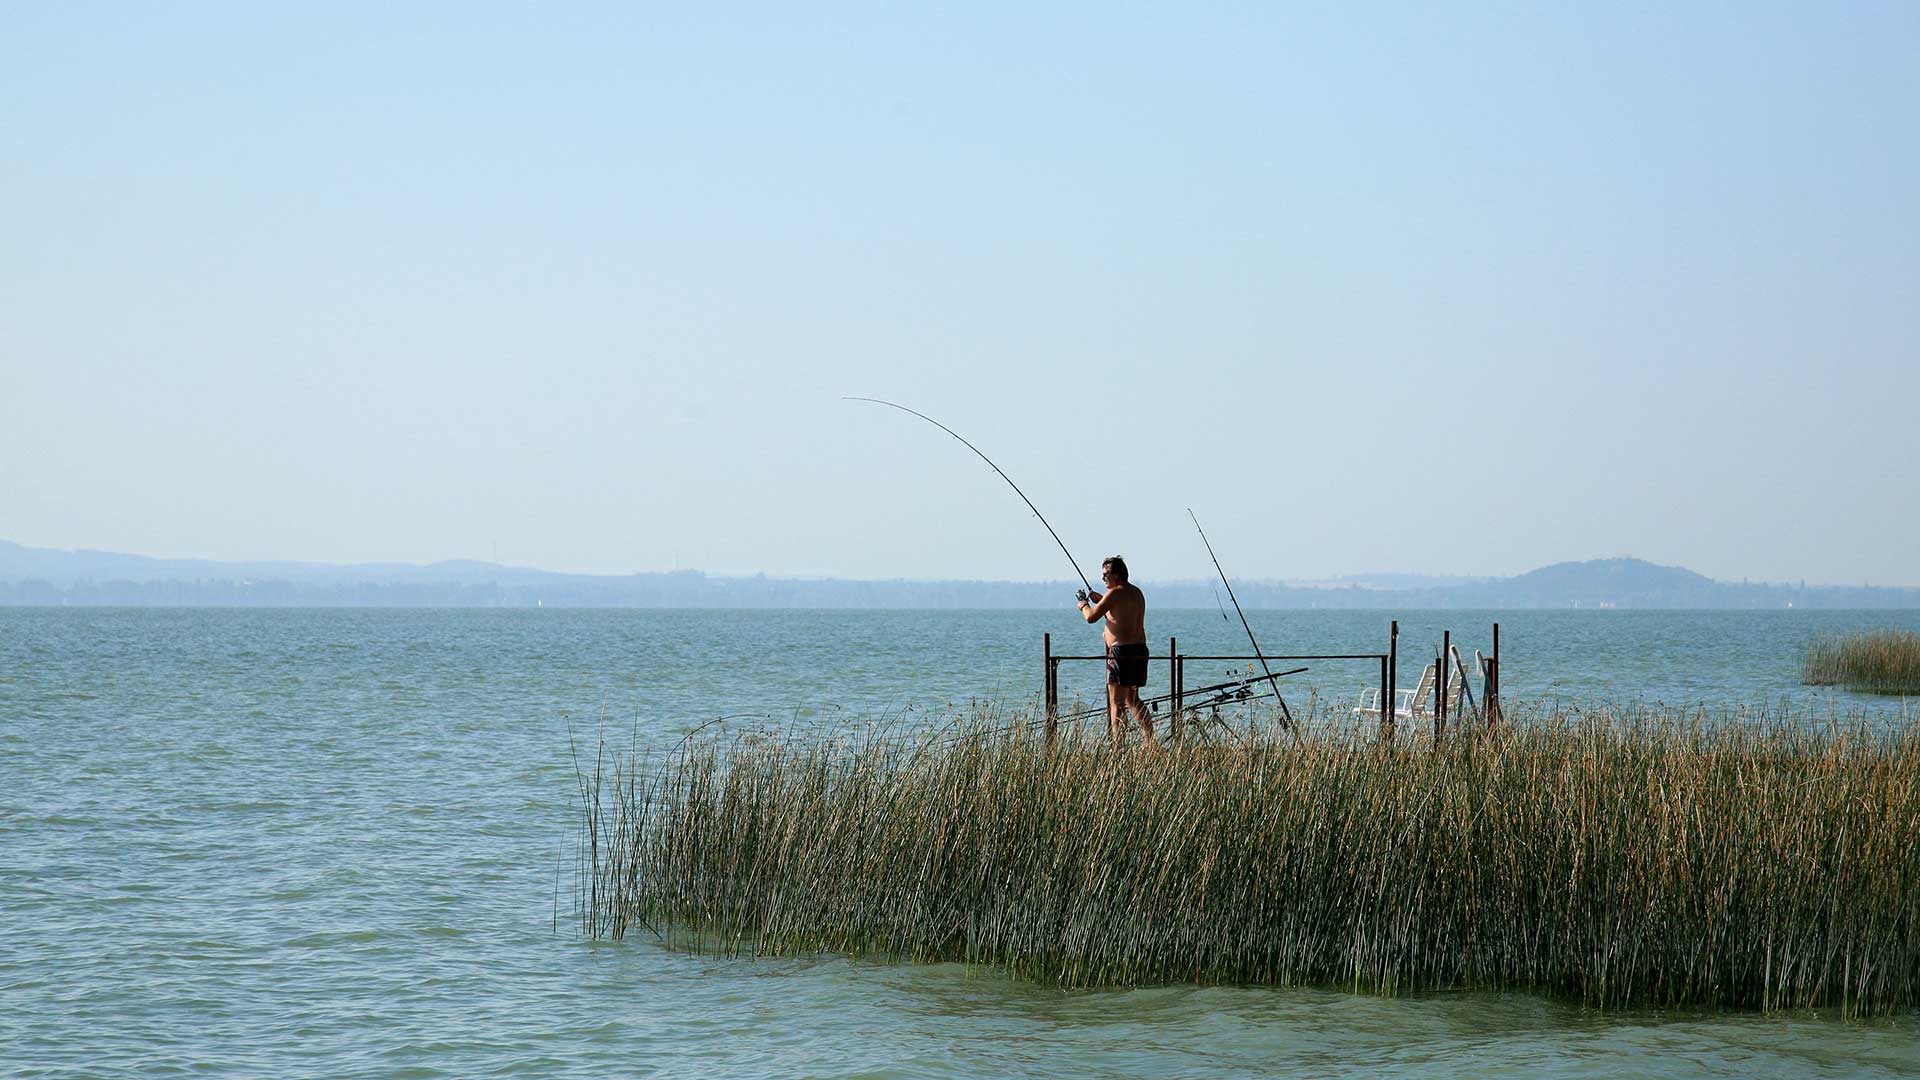 Népszerű sport a horgászat is. A Balaton horgászvíz lett